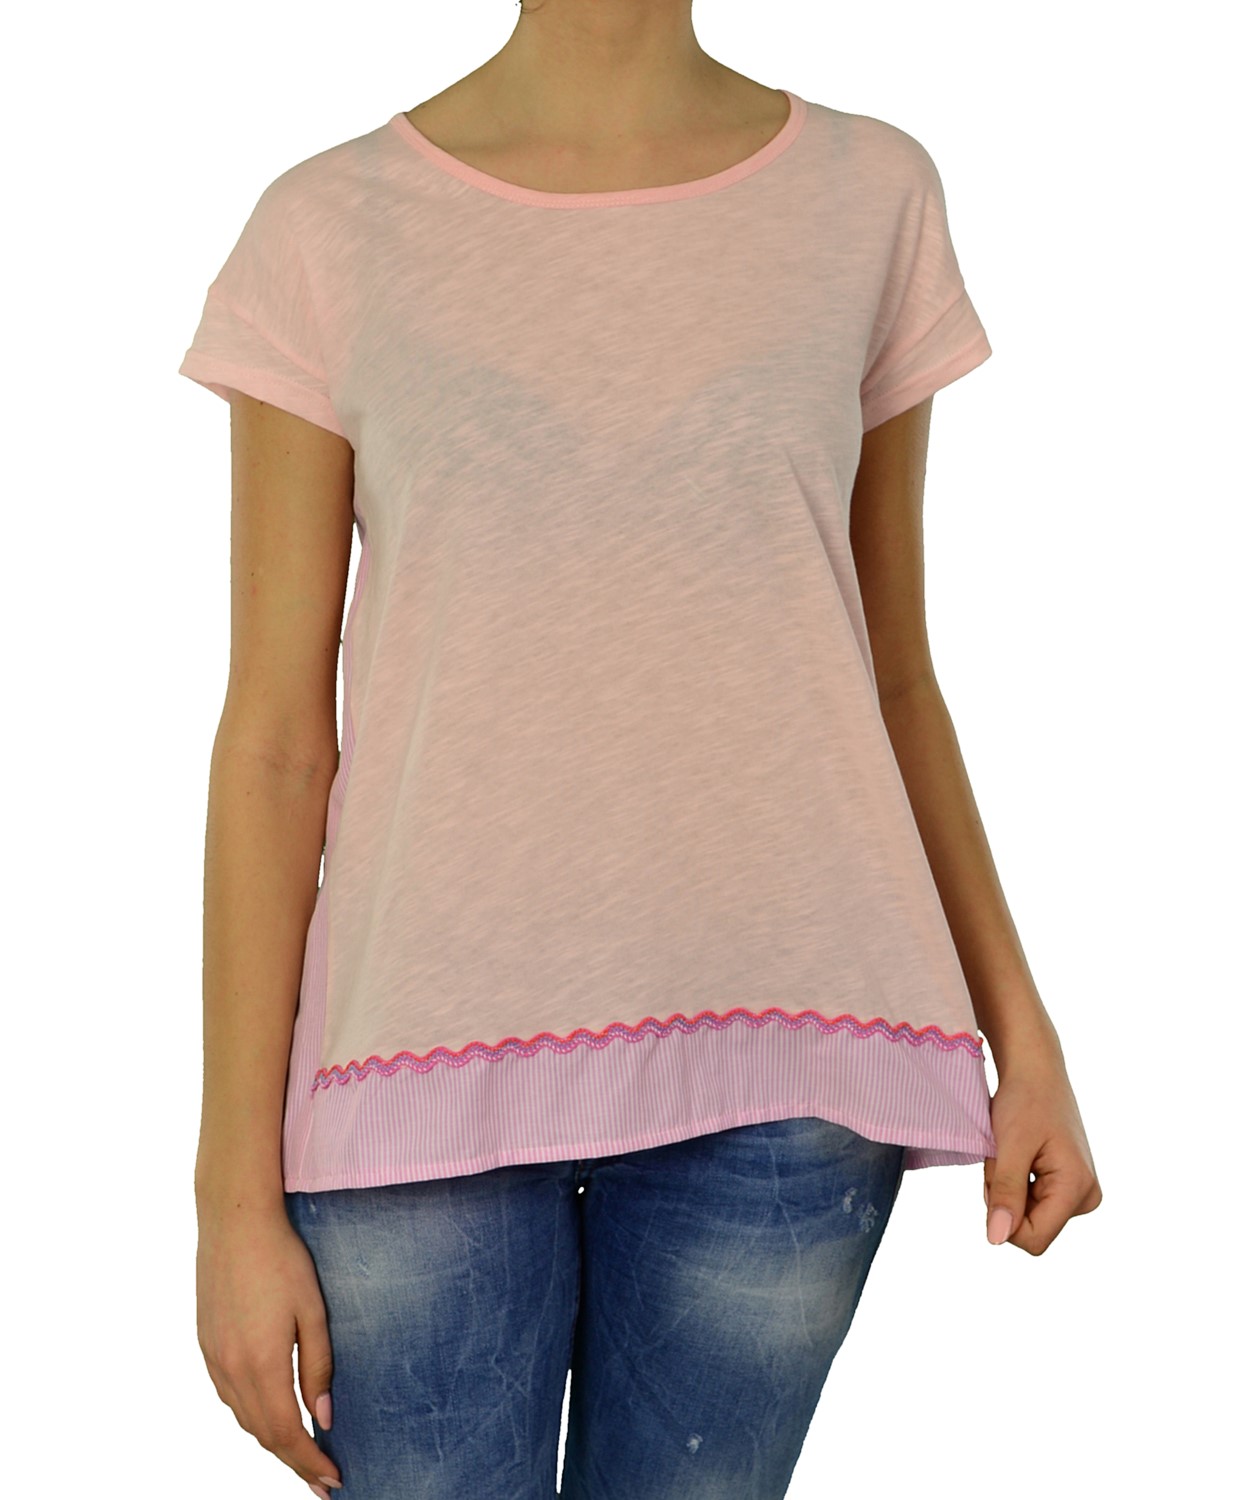 Γυναικείο t-shirt Lipsy ροζ με άνοιγμα 1170032L